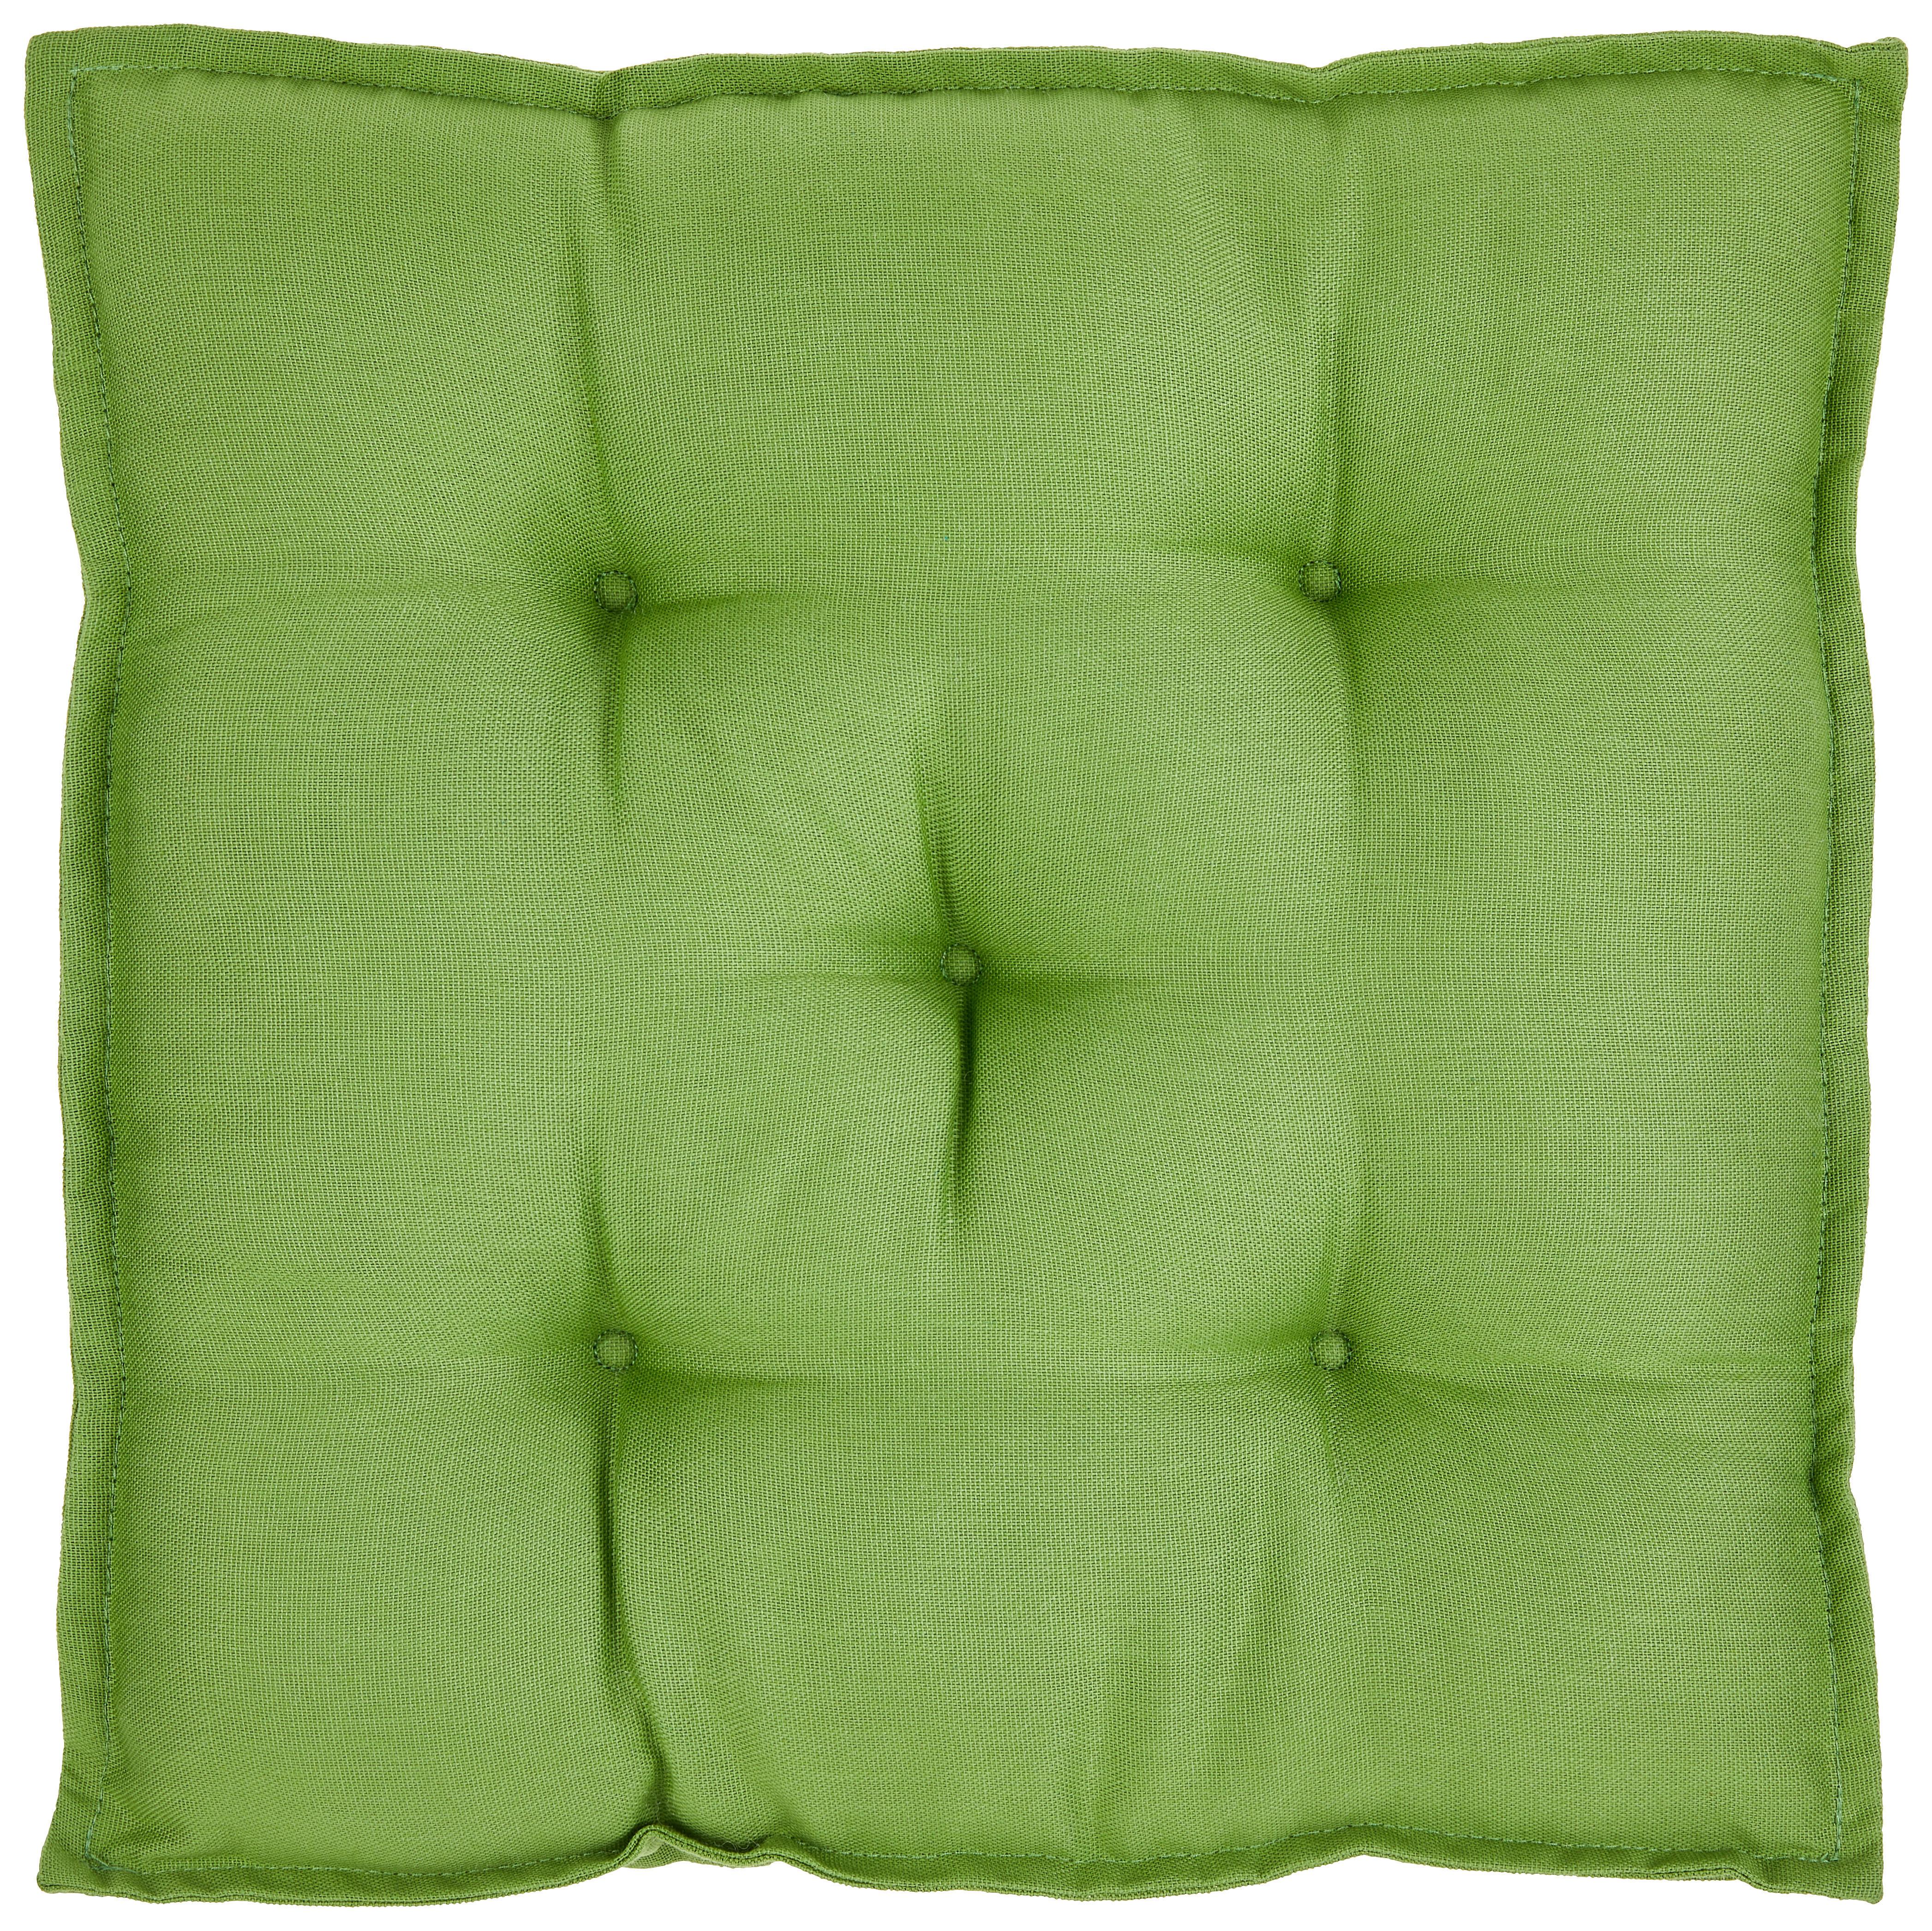 Ülőpárna Kristina - Zöld, konvencionális, Textil (40/40/5cm) - Ondega